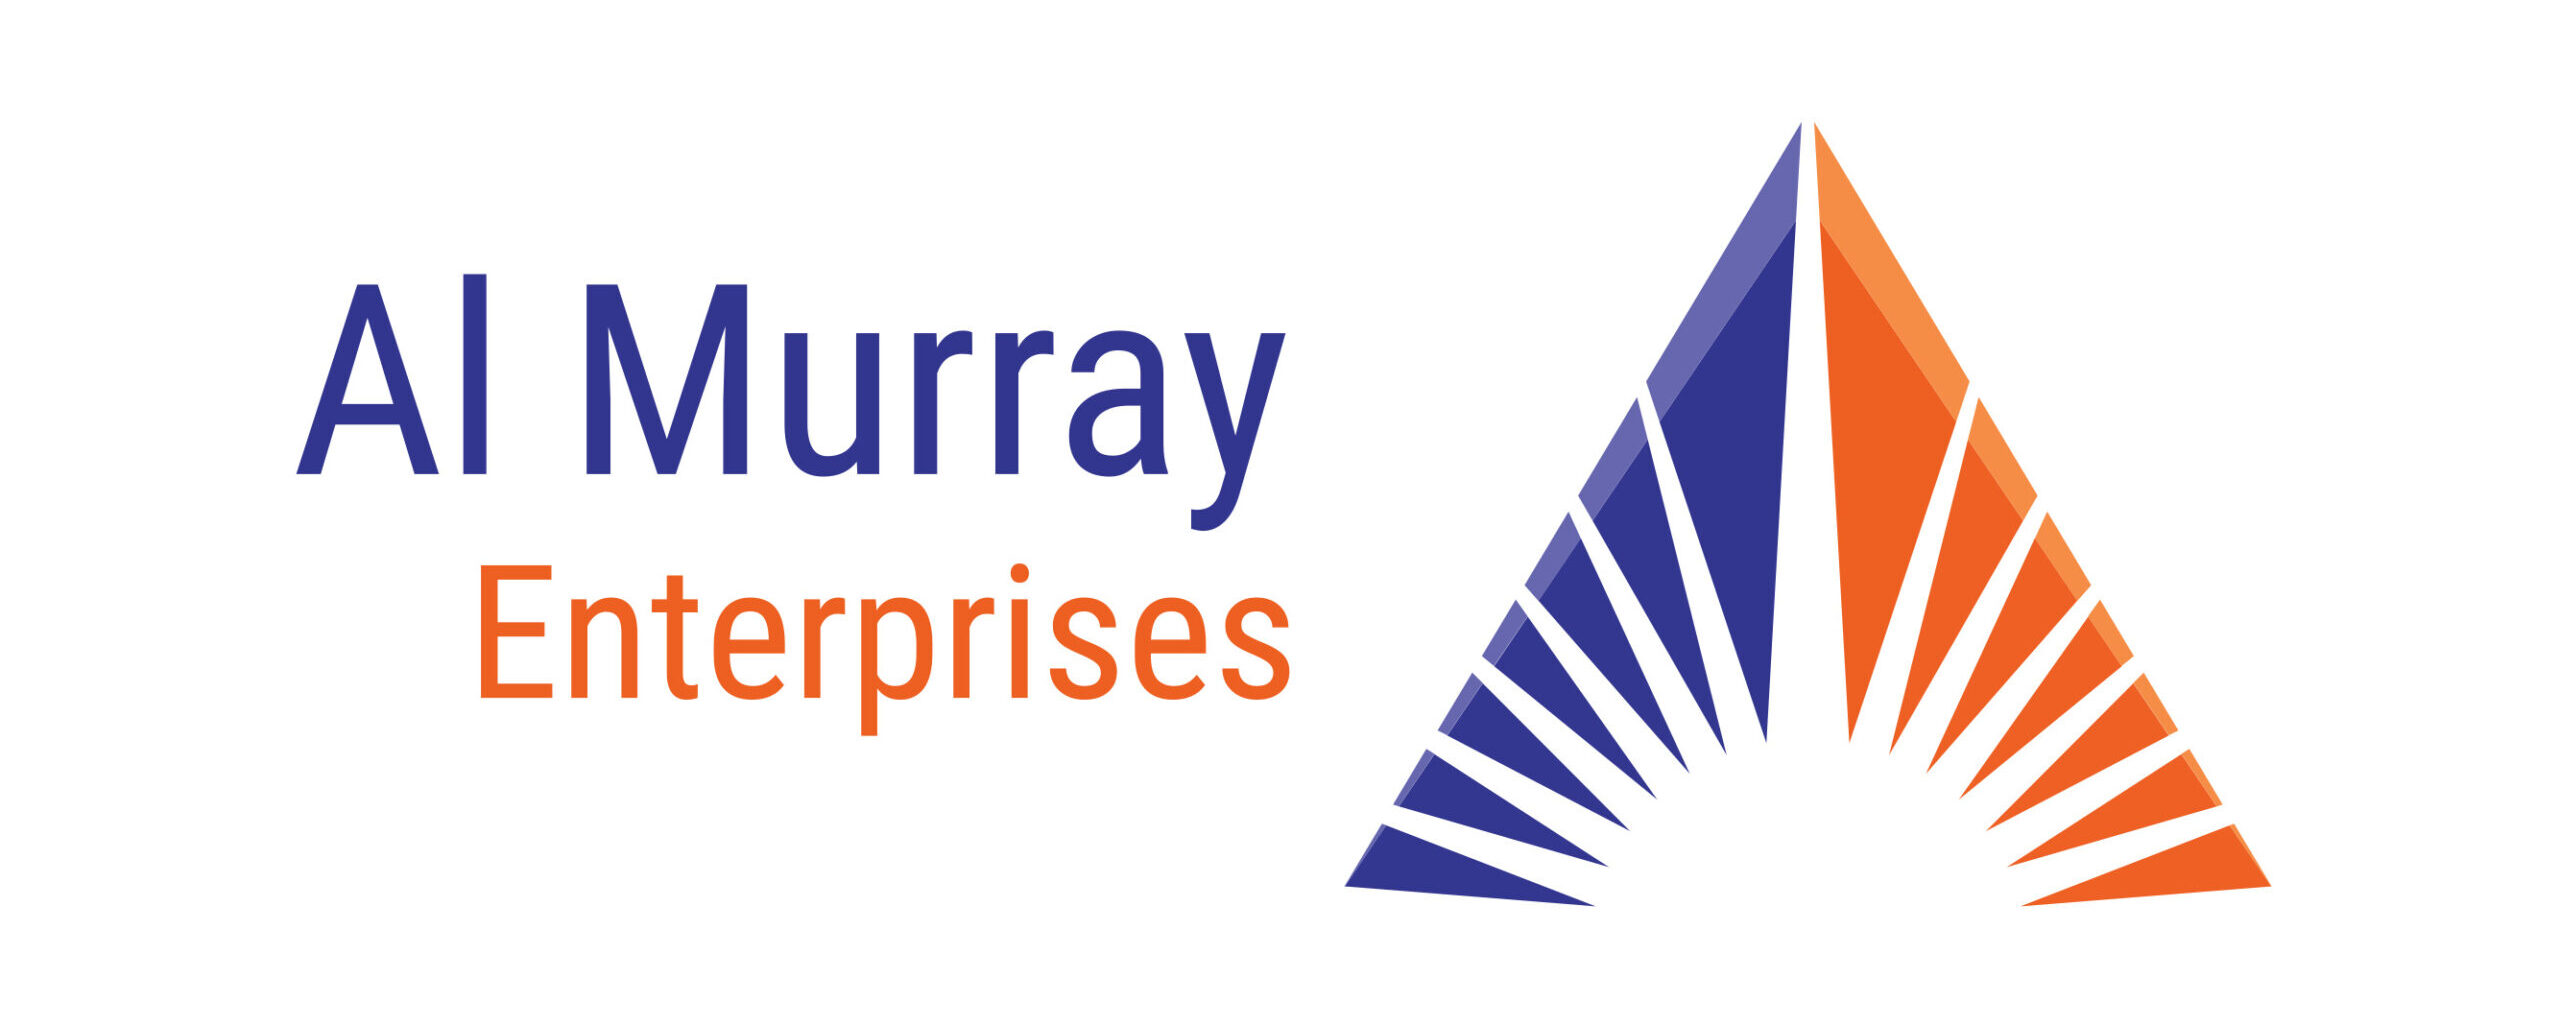 Al Murray Enterprises Logo